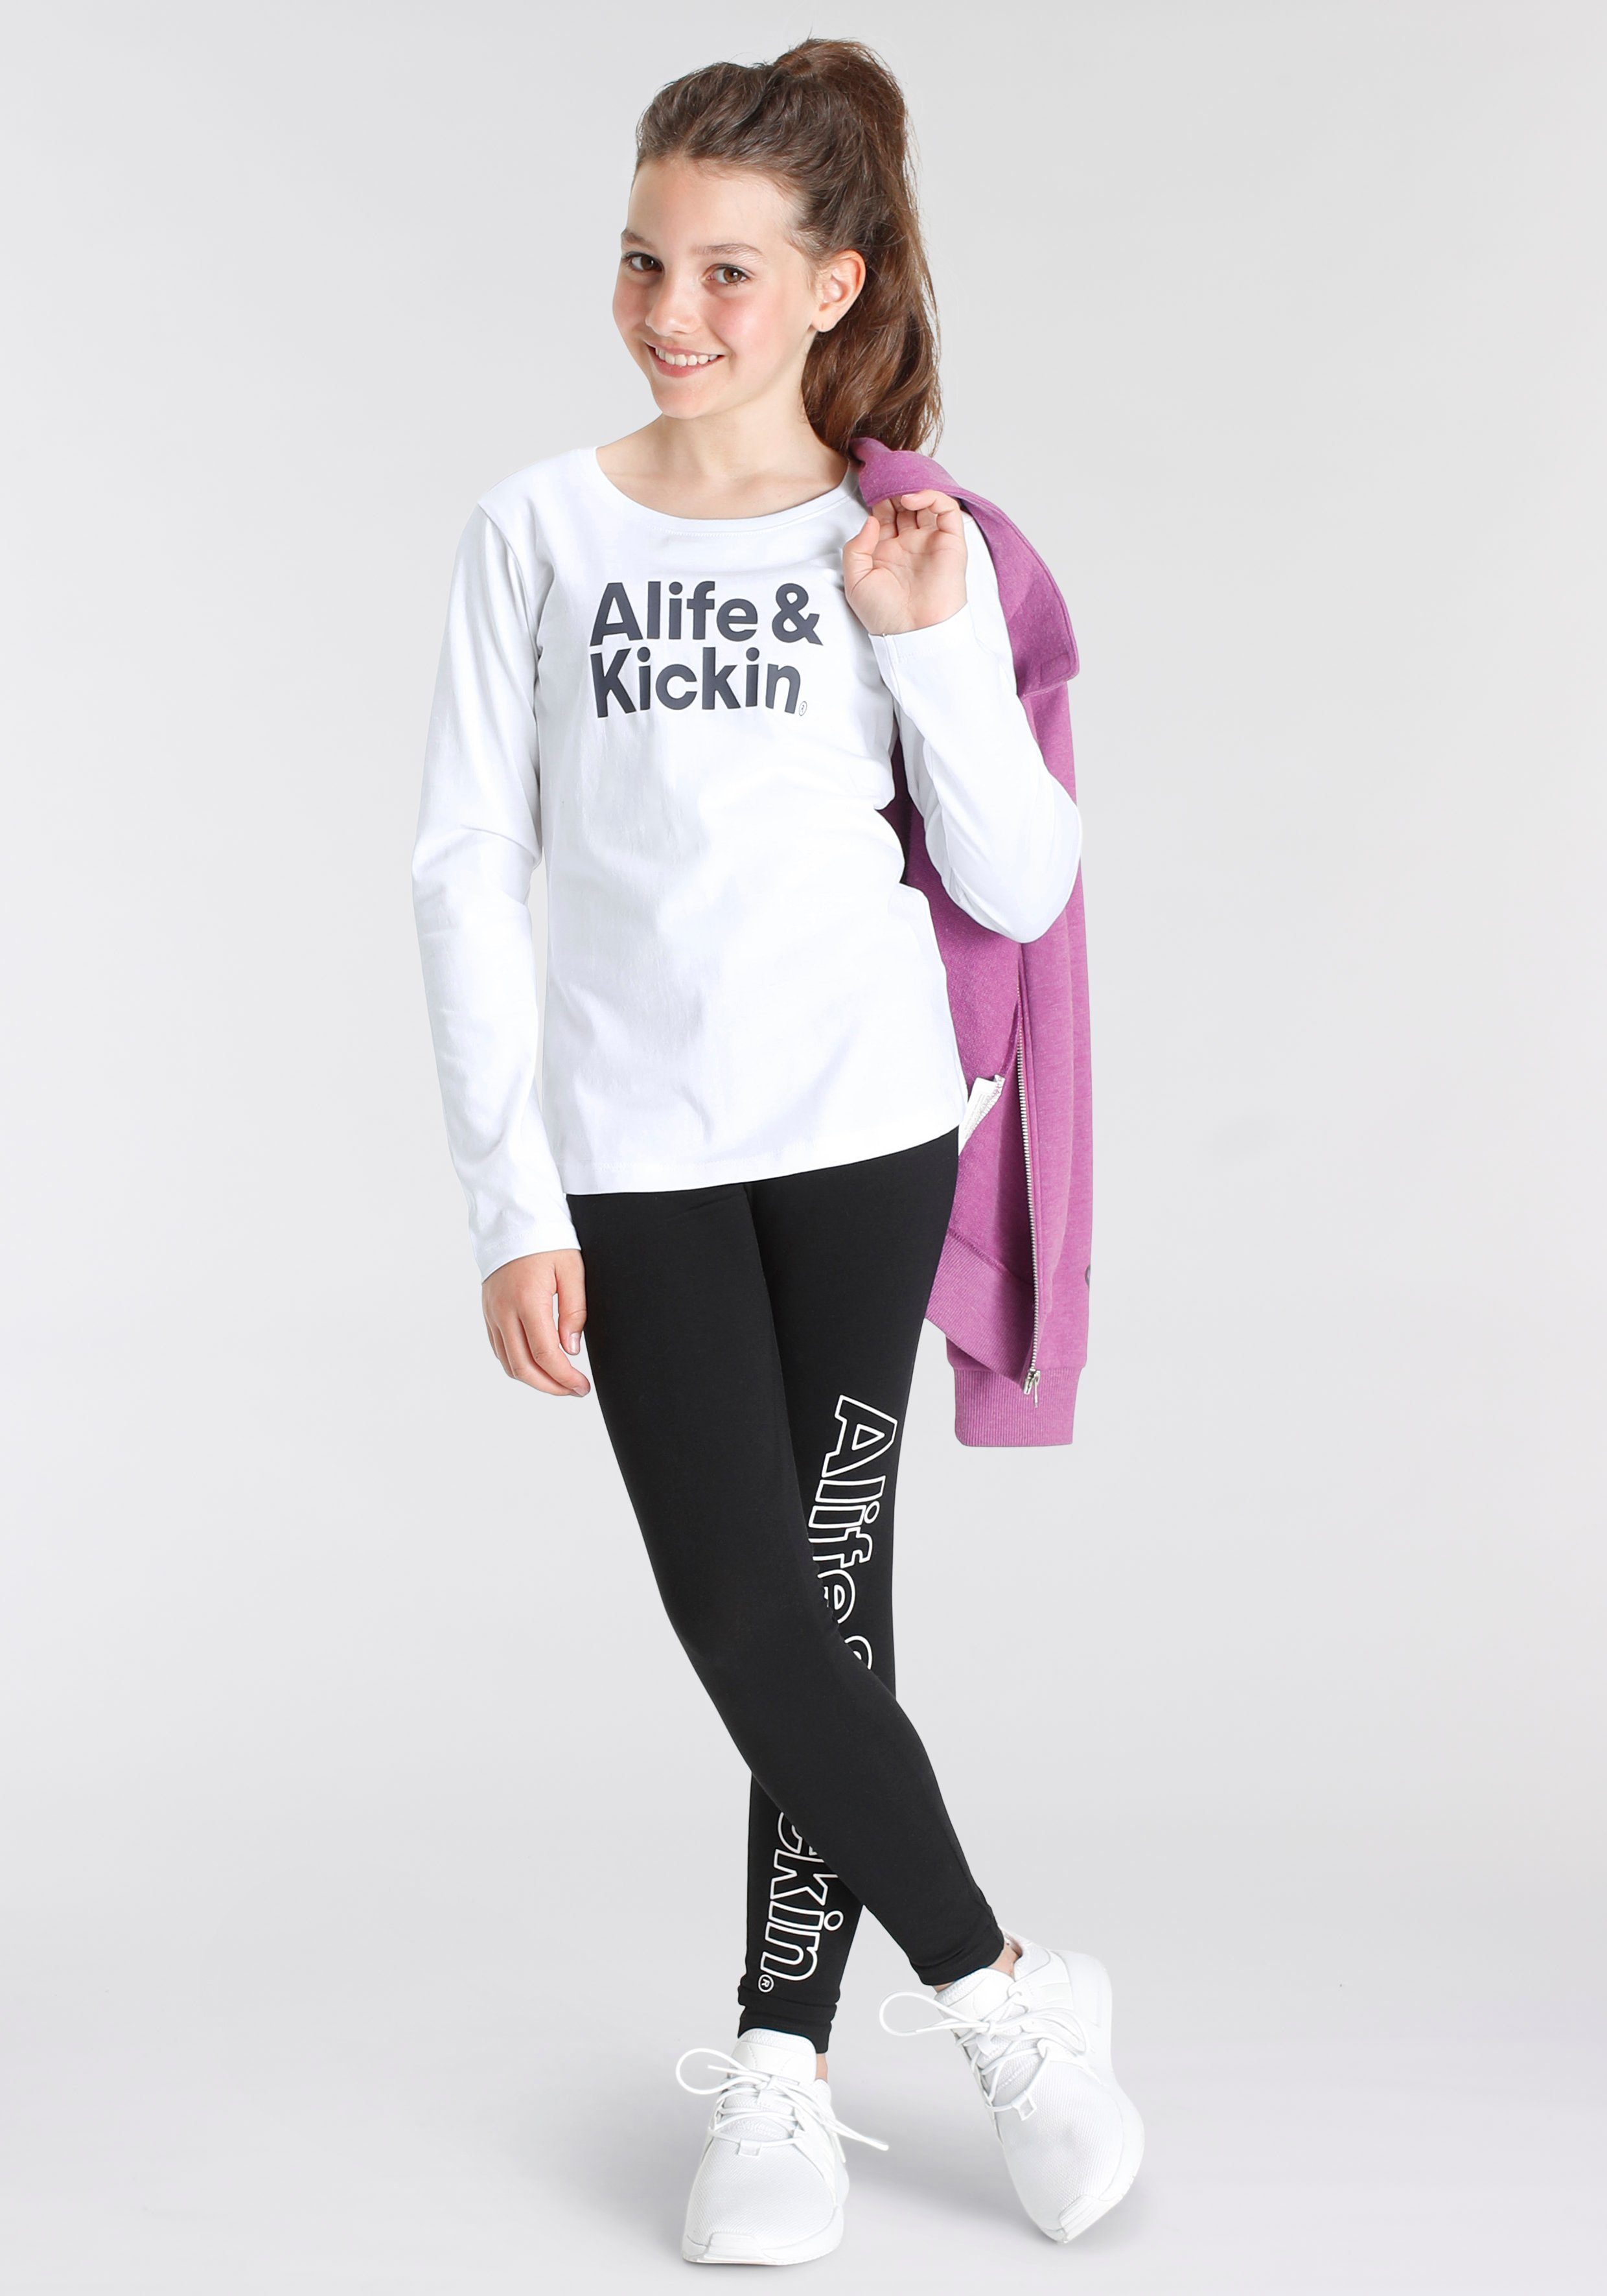 Alife & Kickin Langarmshirt mit Druck Alife Logo NEUE für & MARKE! Kids. Kickin